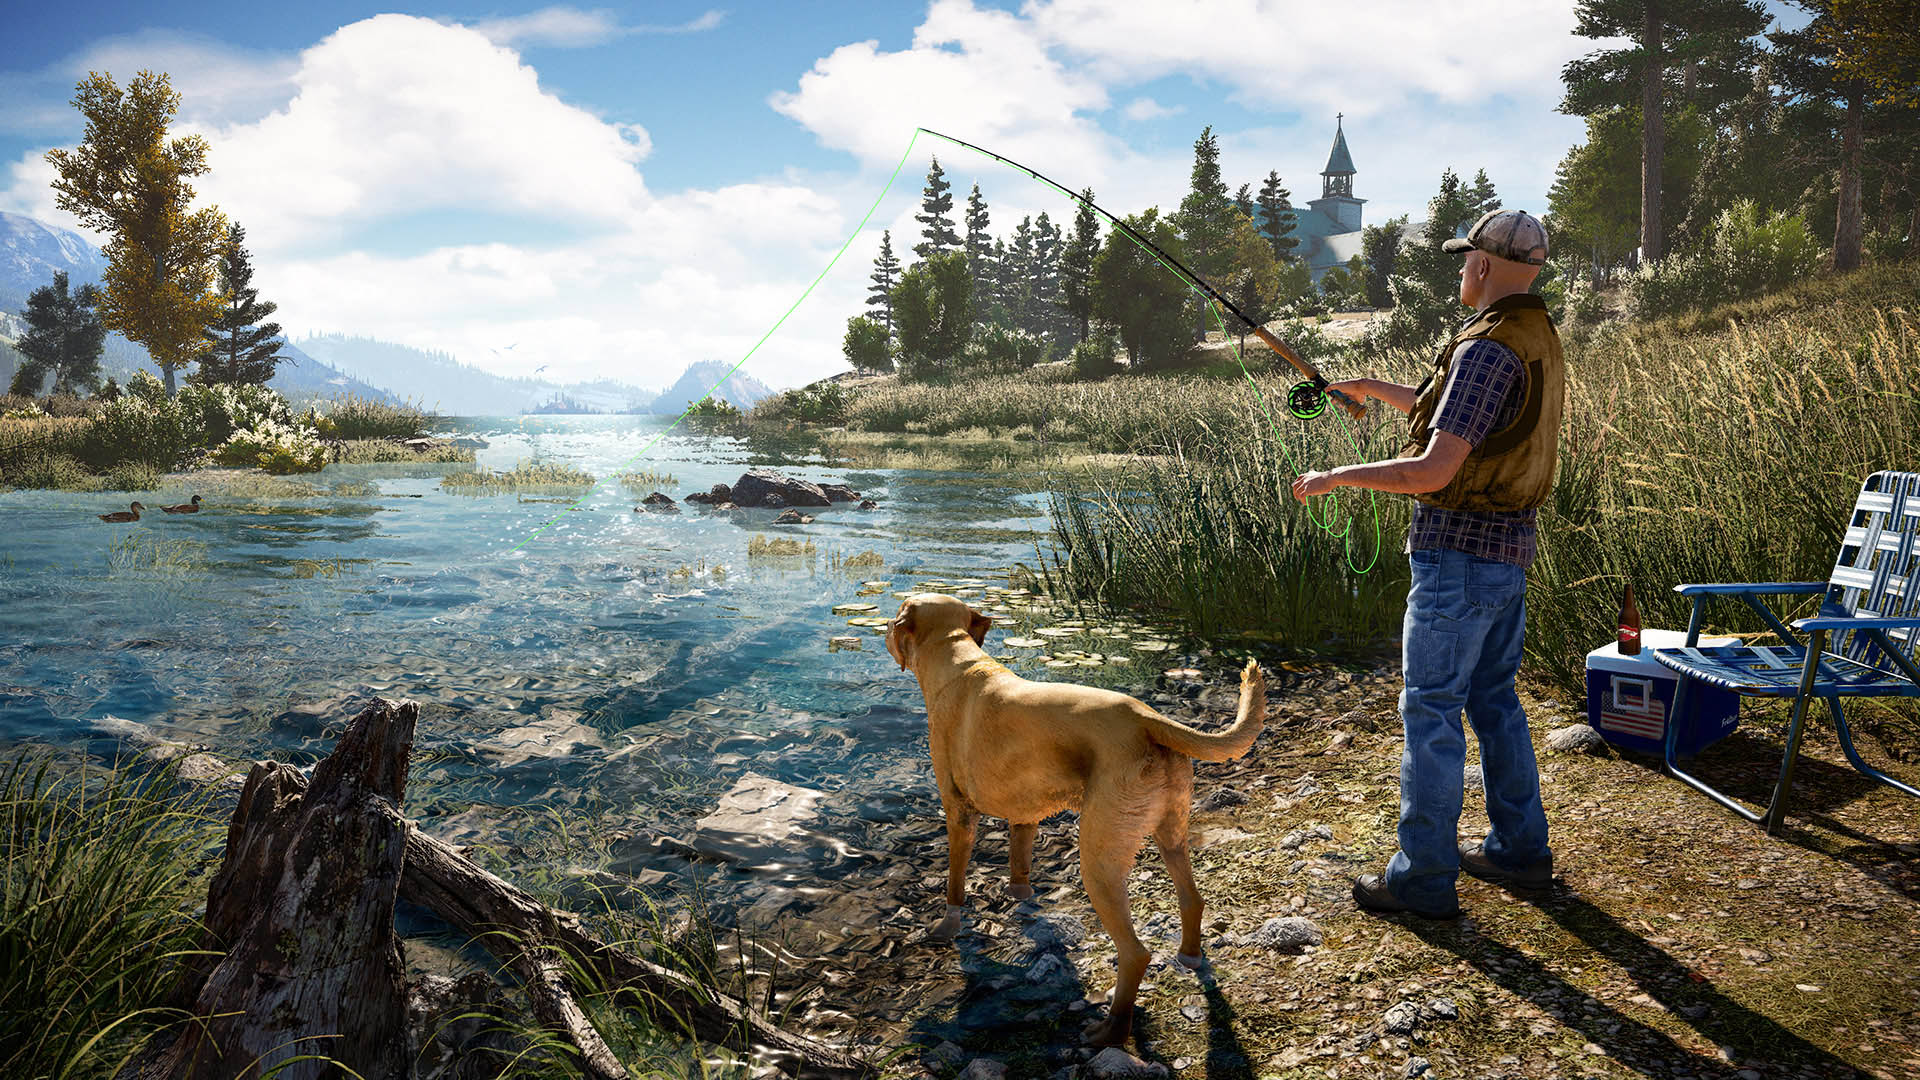 Jemand hat die Insel aus Lost ziemlich genial in Far Cry 5 gebaut